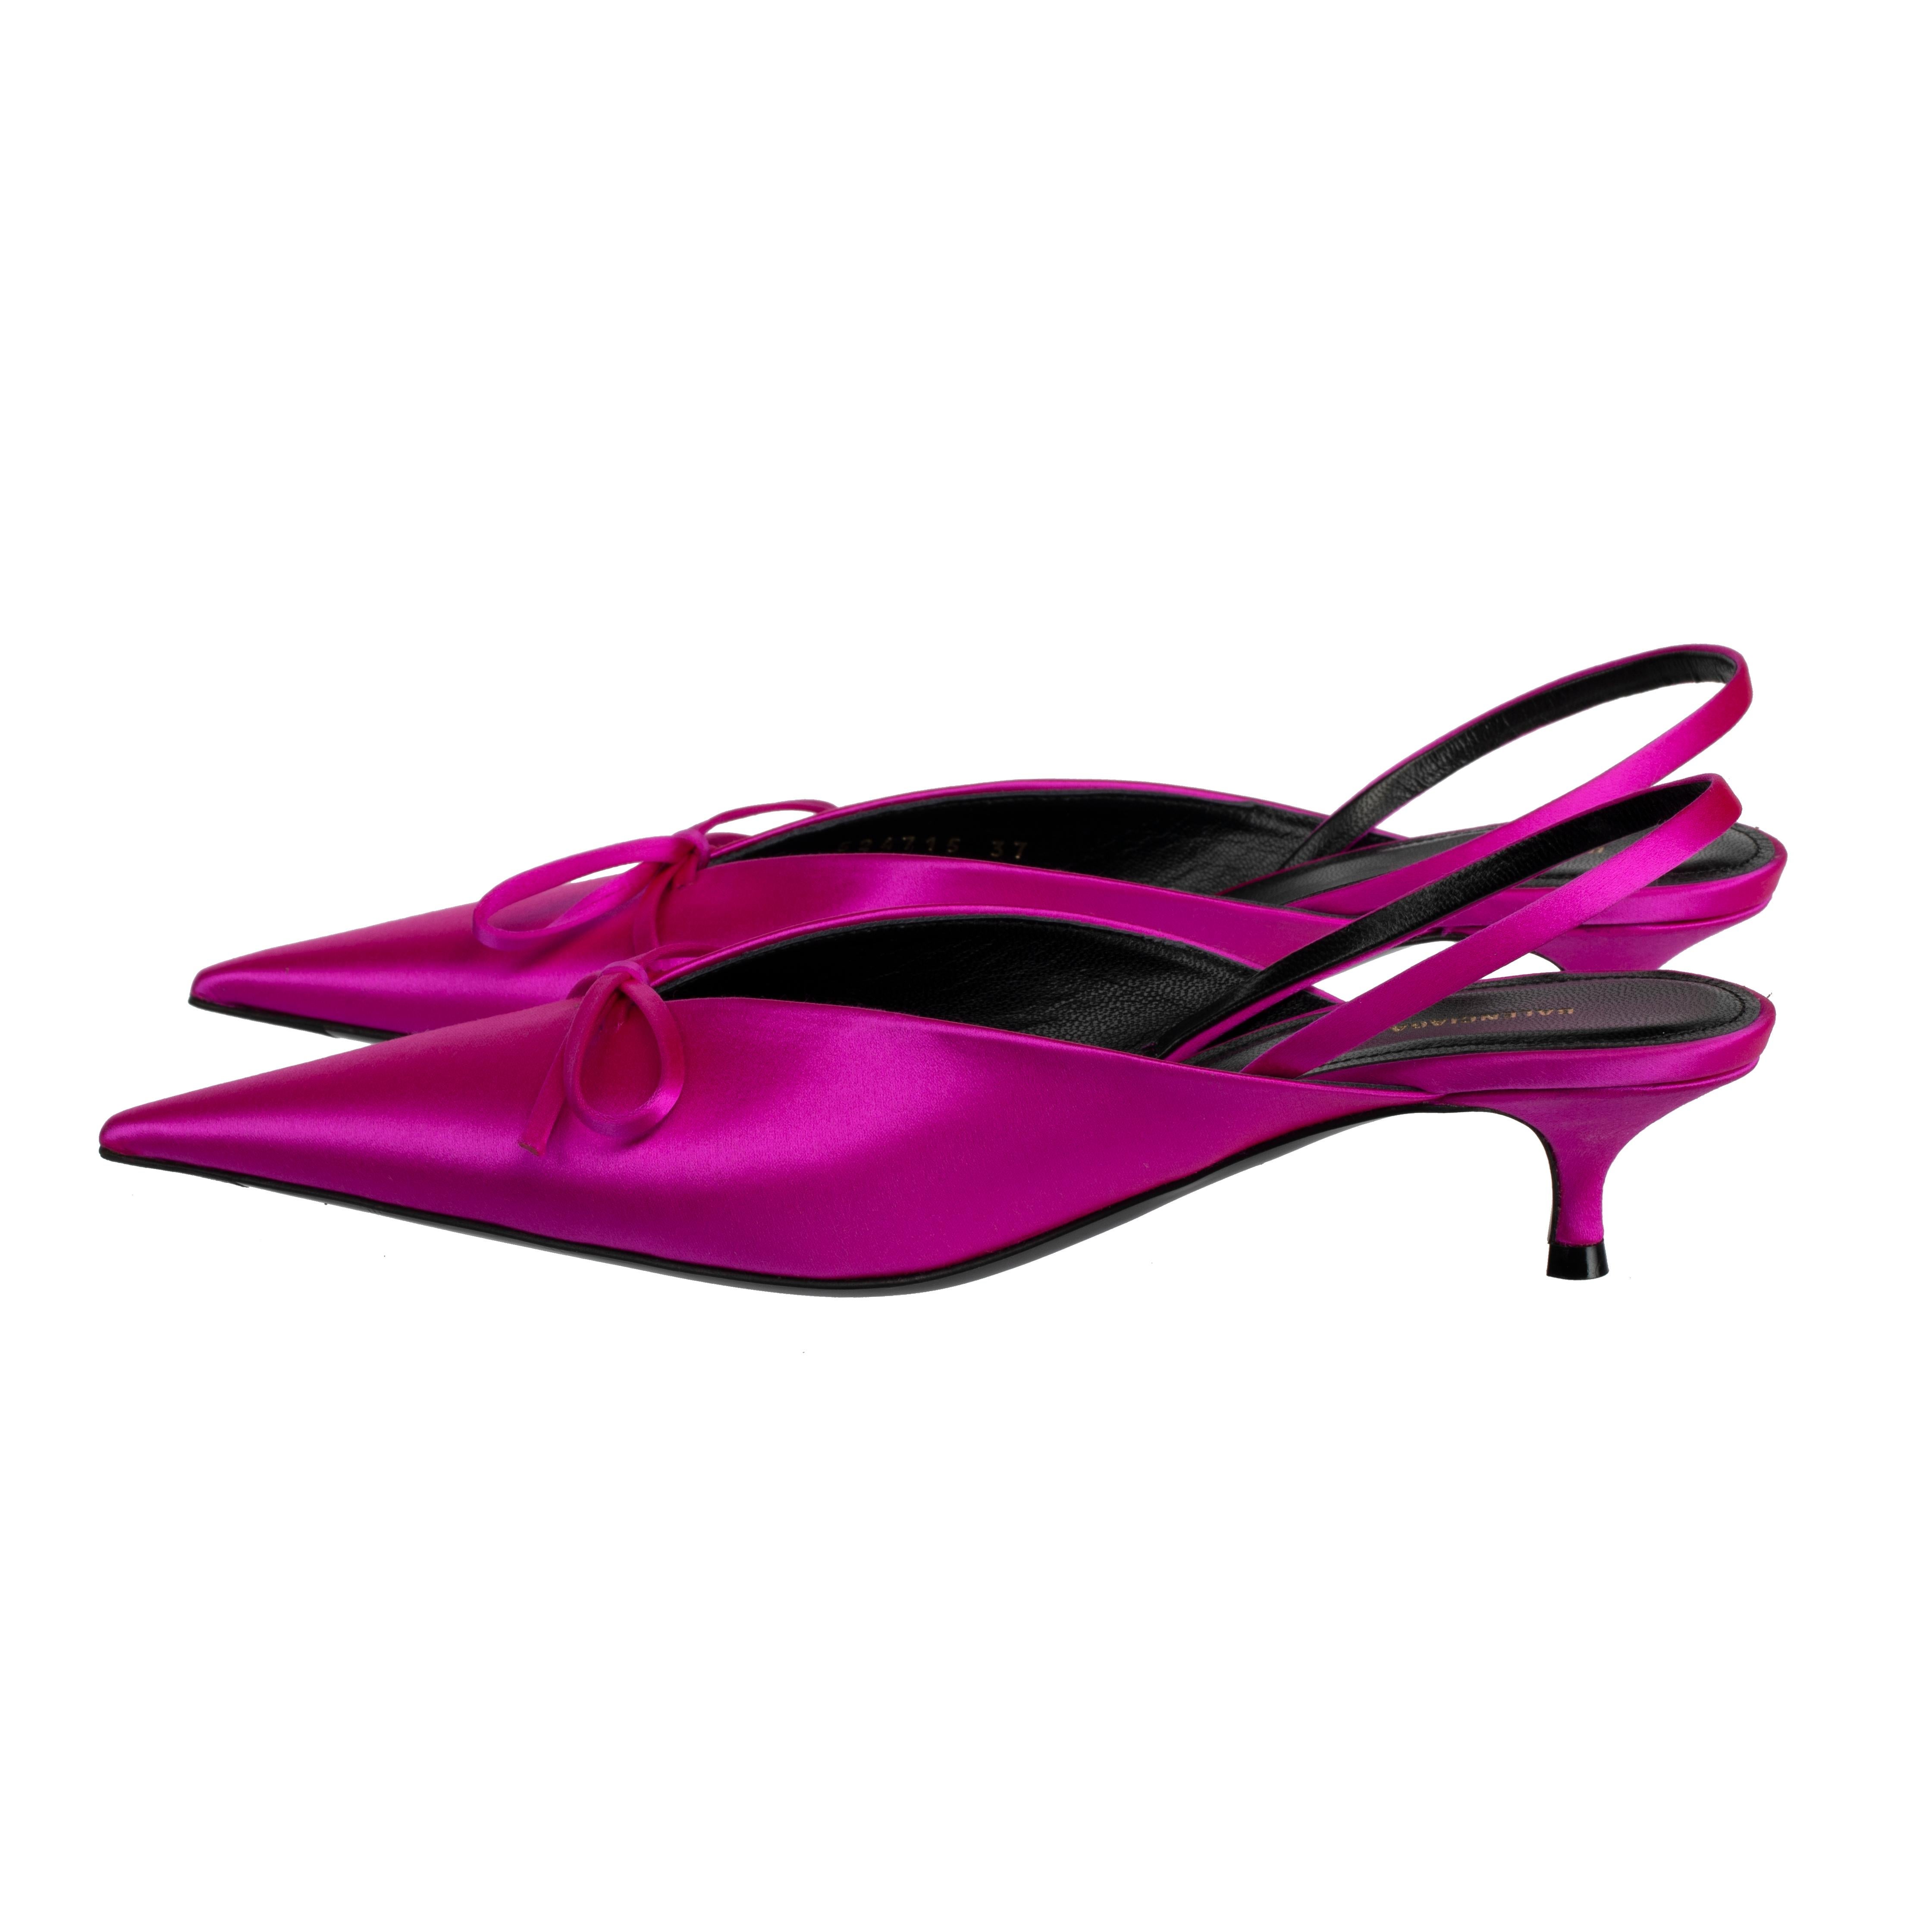 pink slingback kitten heels